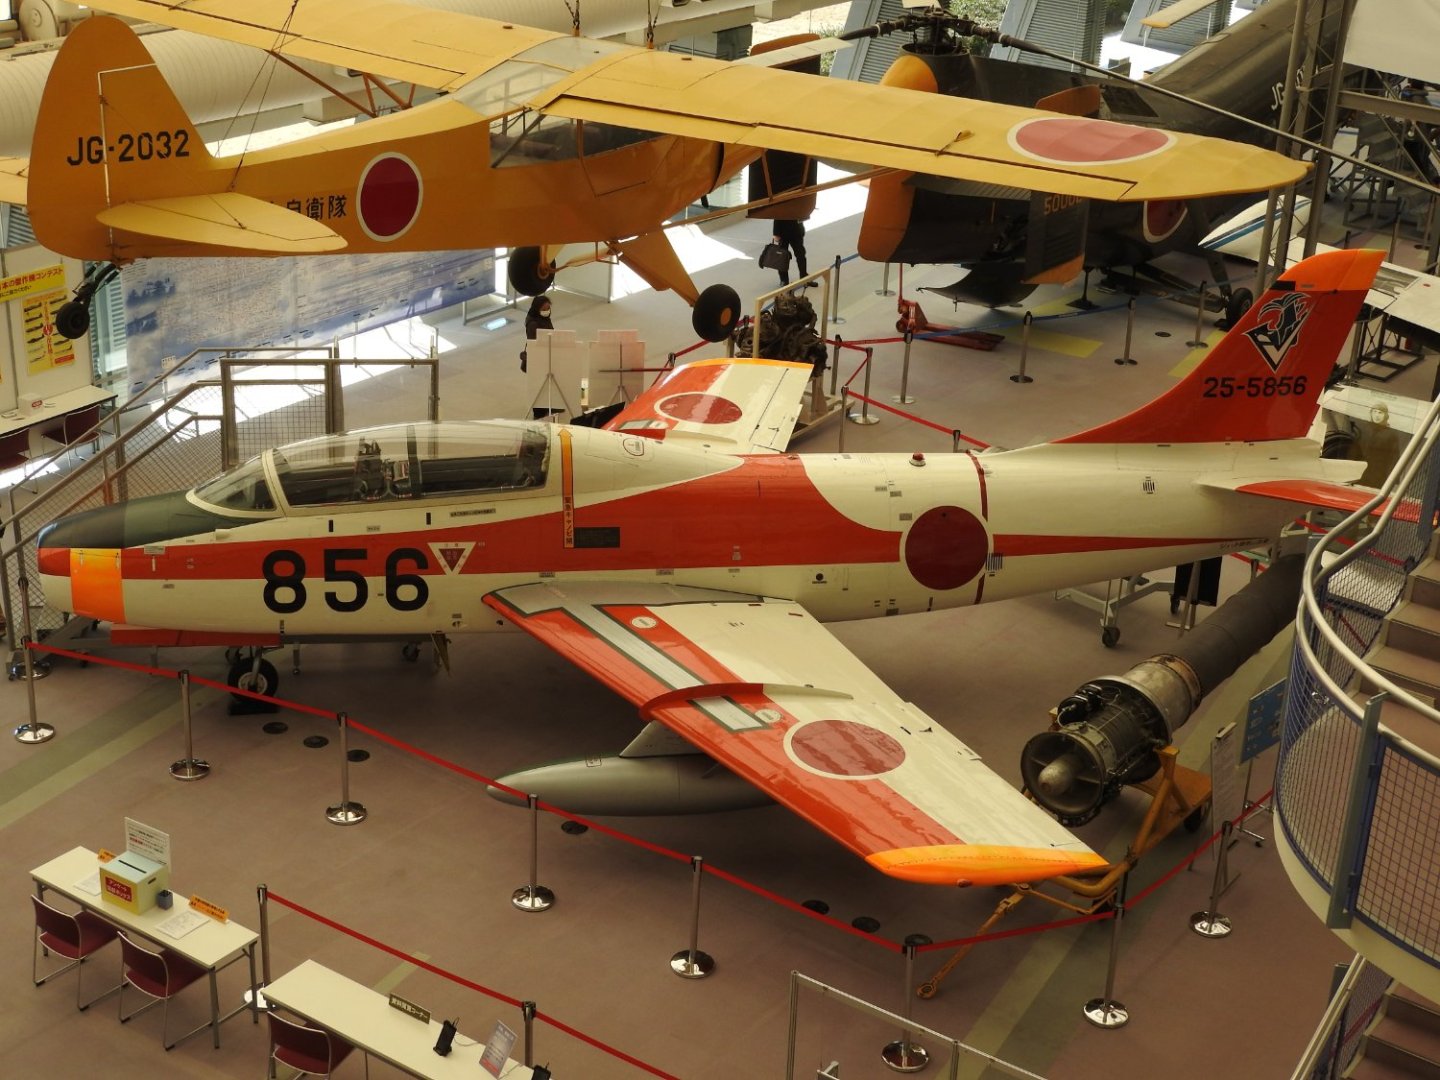 Fuji_T-1_(25-5856)_at_Tokorozawa_Aviation_Museum,_Saitama_prefecture,_Japan.jpg